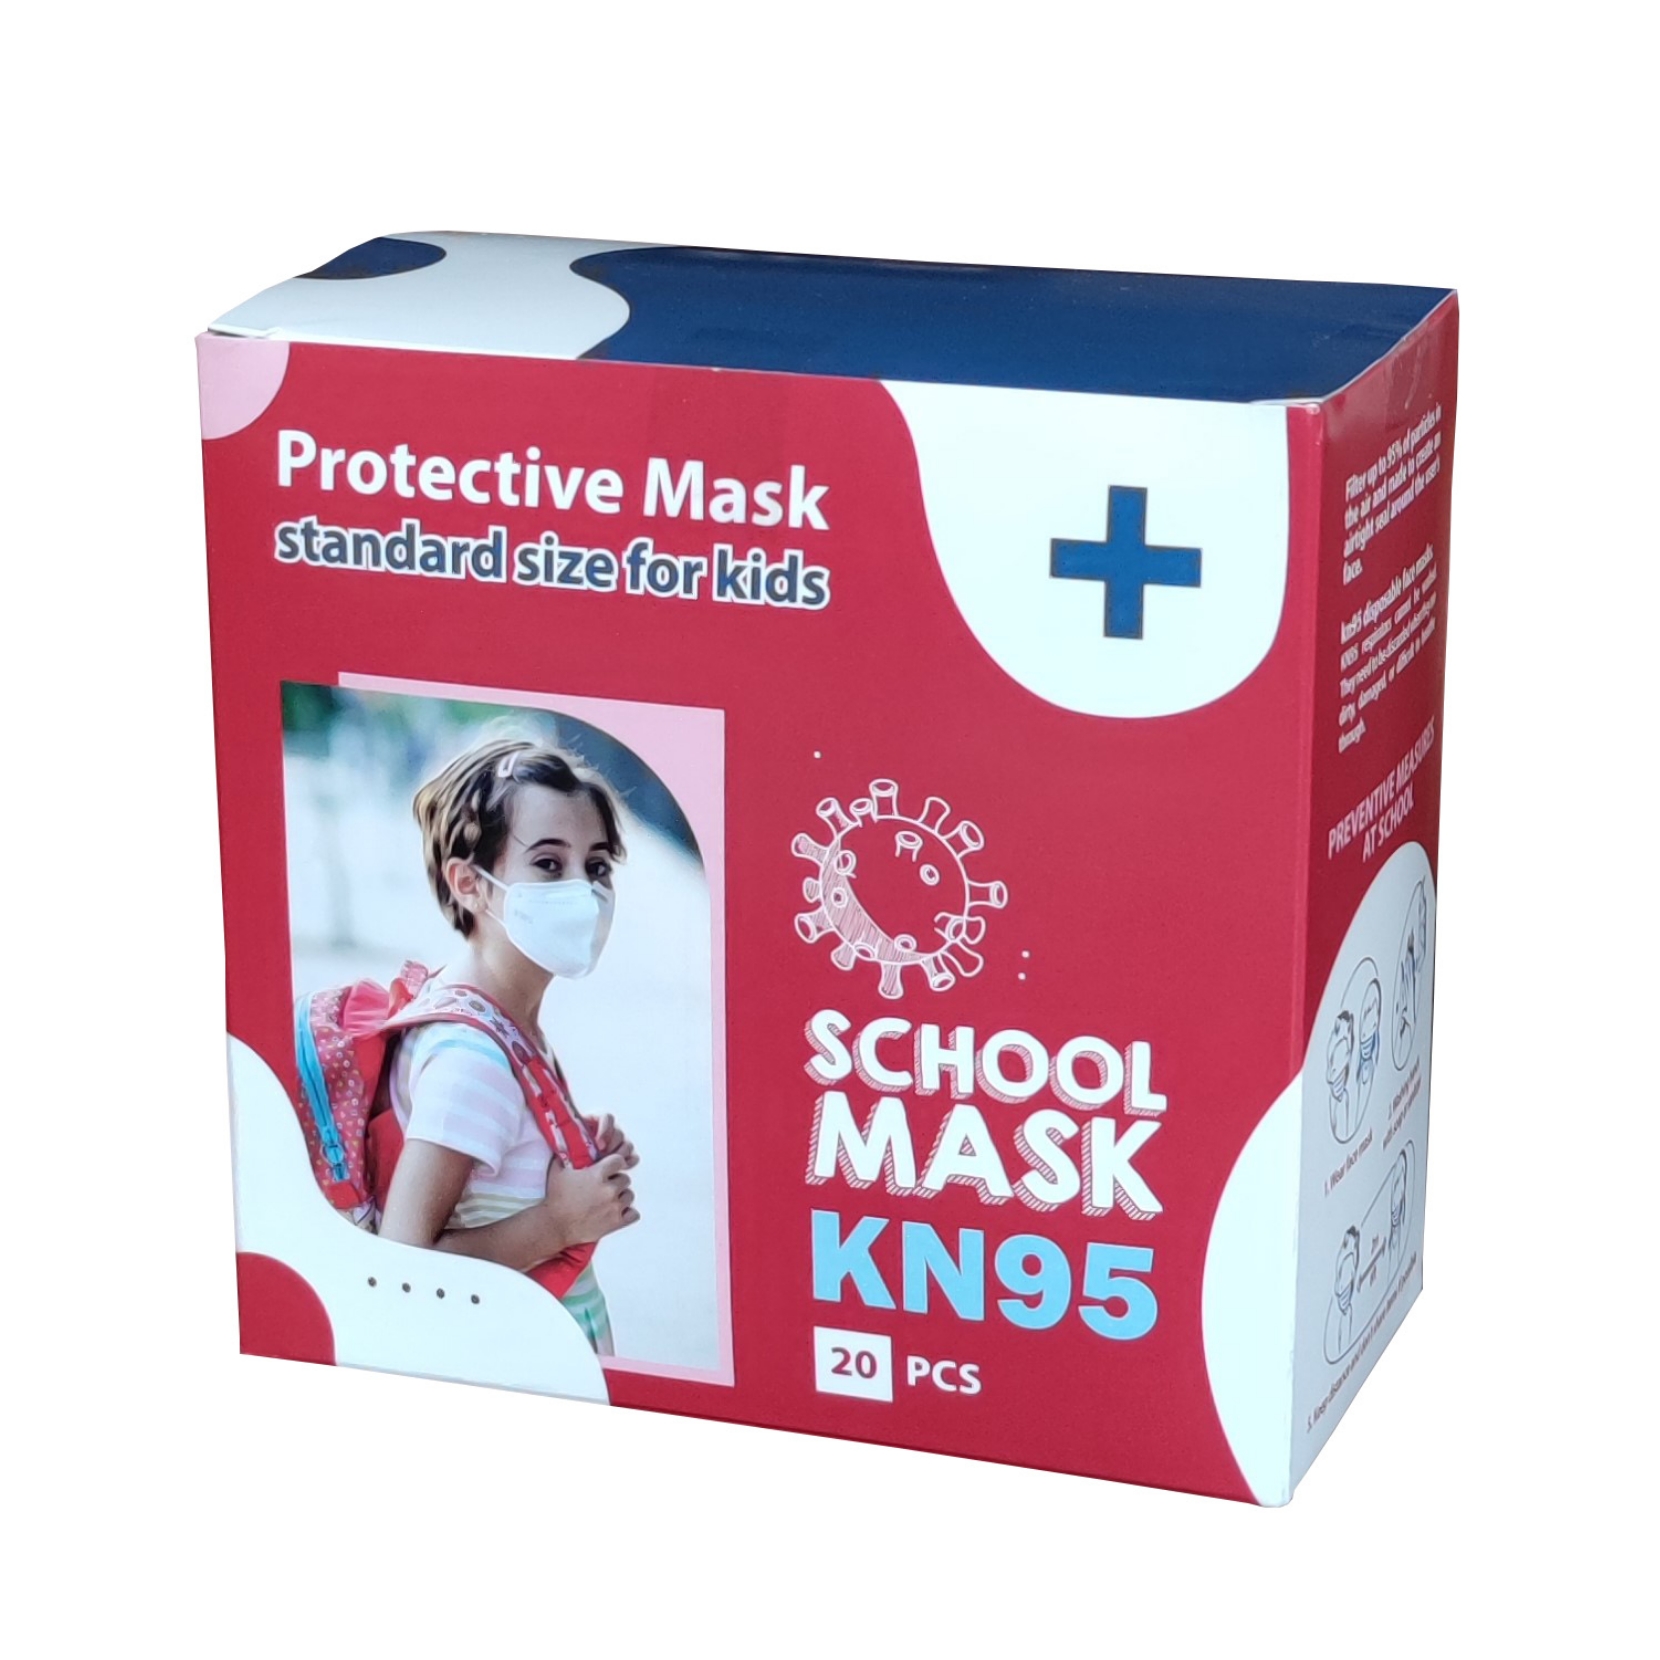  ماسک تنفسی کودک اسکول مدل KN95-1 بسته 20 عددی